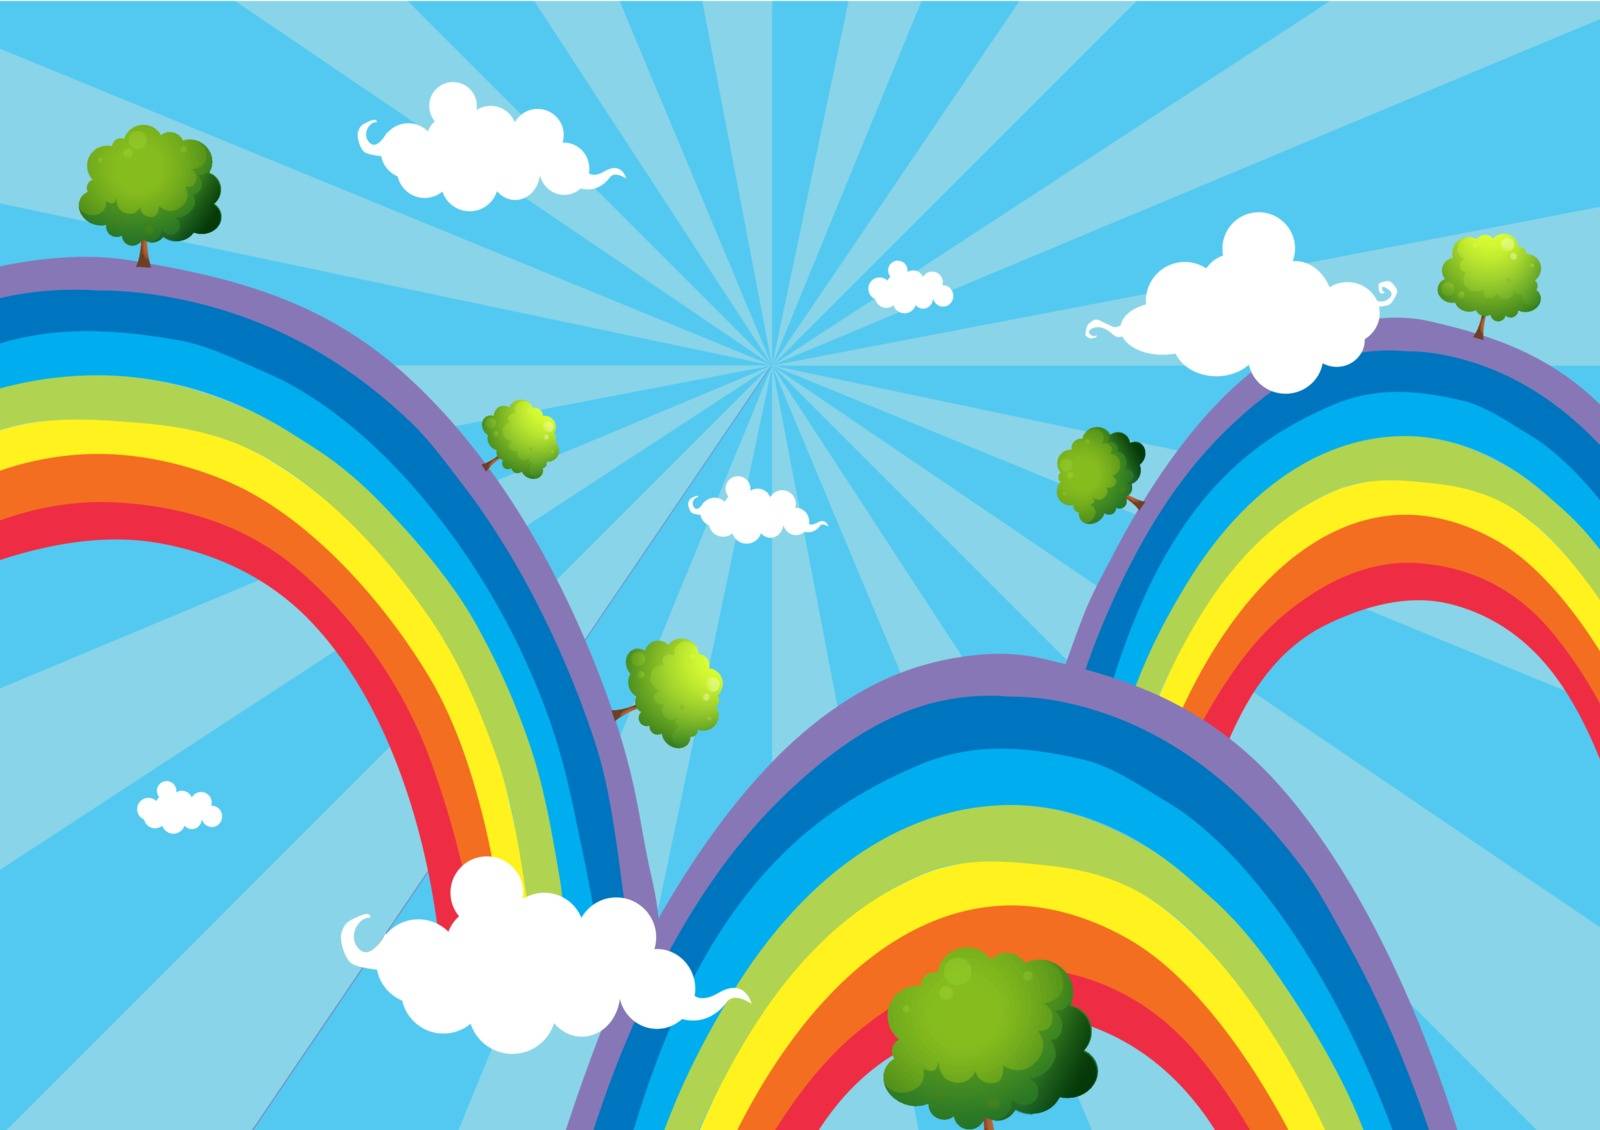 Three rainbows by iimages